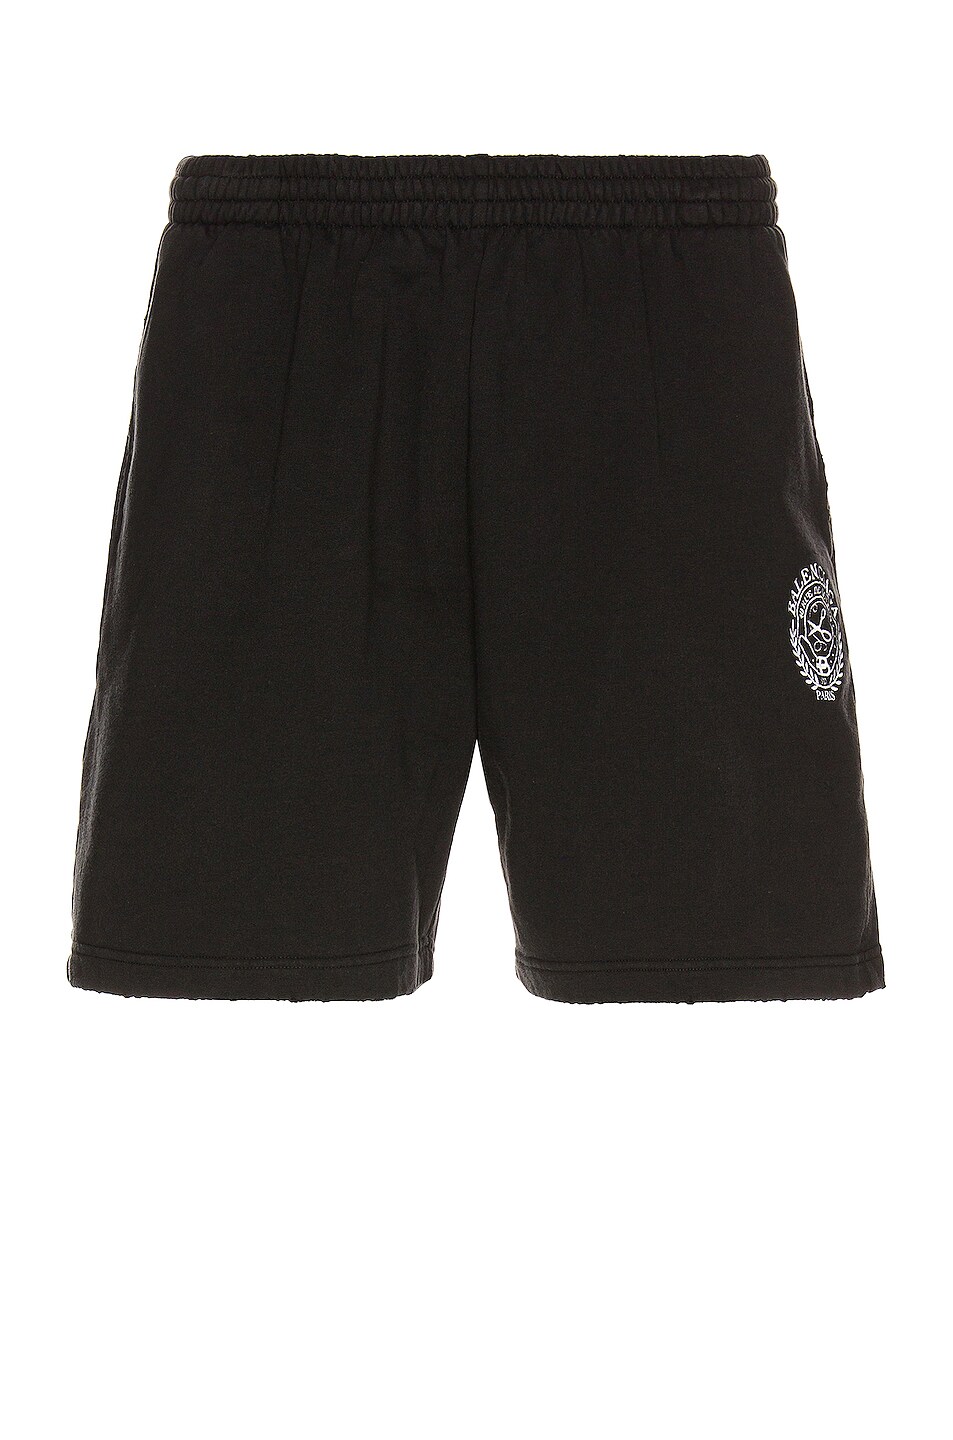 Image 1 of Balenciaga Sweat Shorts in Washed Black & White